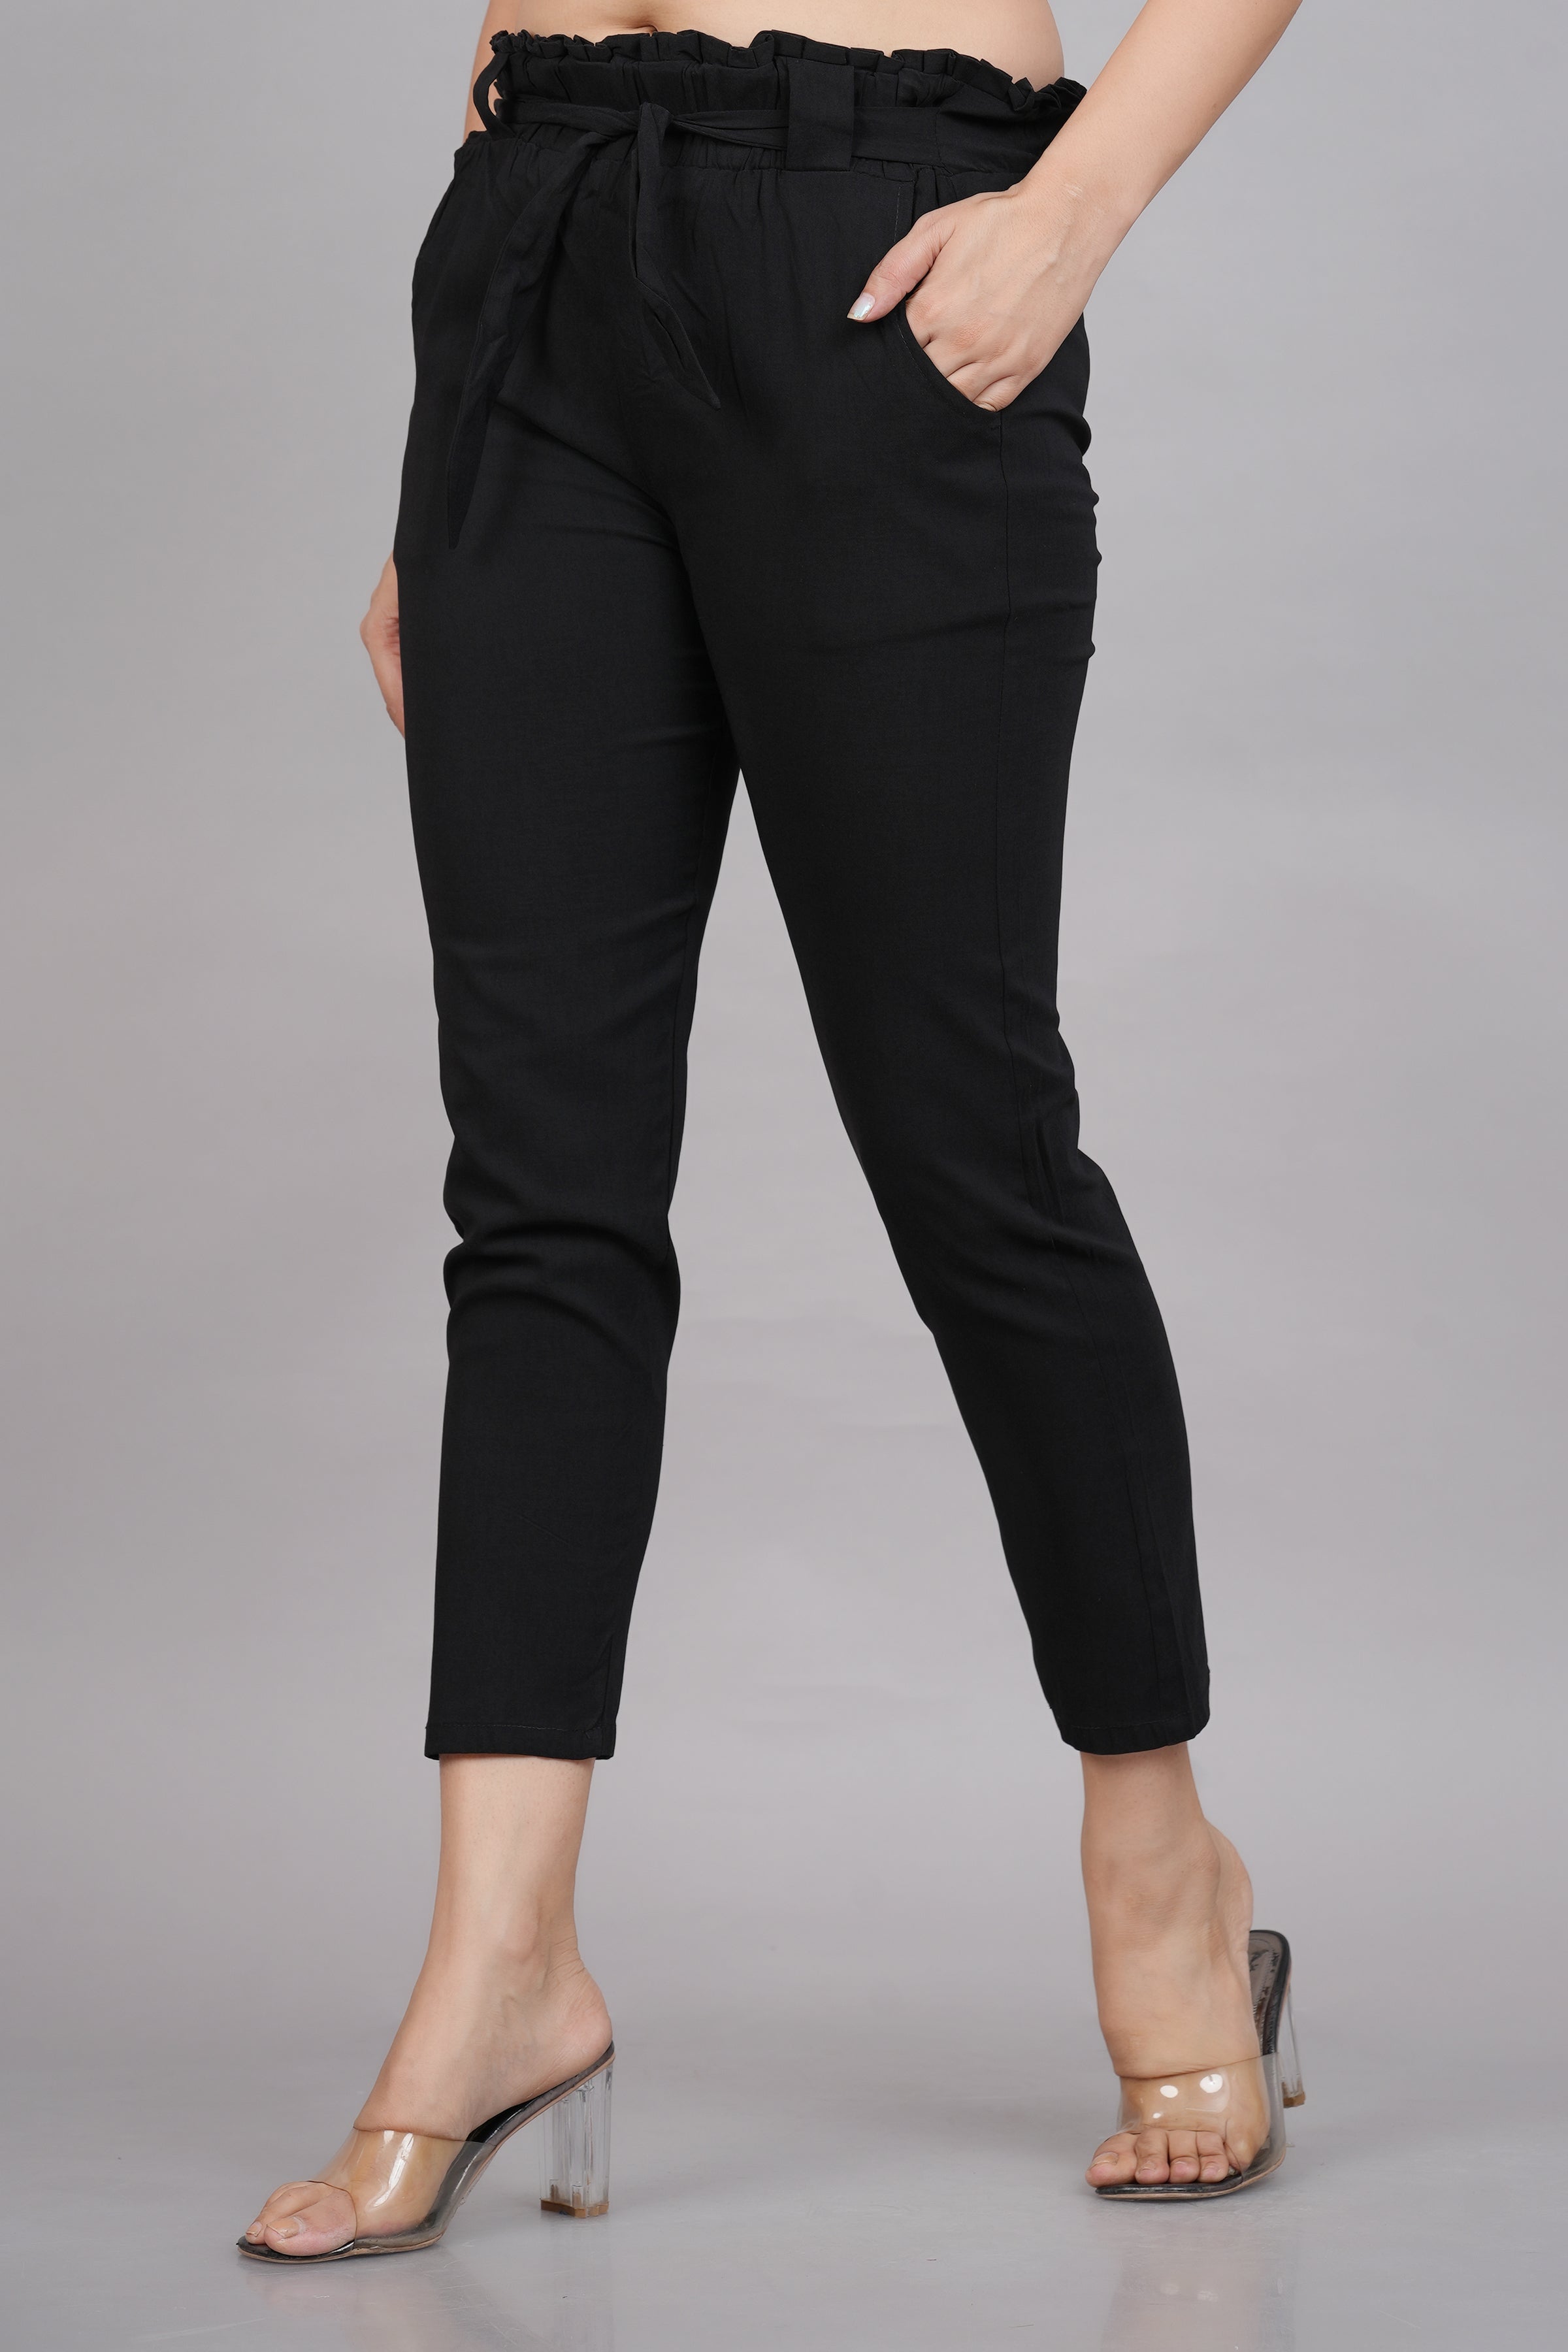 NTX - Womens Cotton Flex Ankle Length Trouser Pants/Regular Pants for Women  (Biscuit Colour)